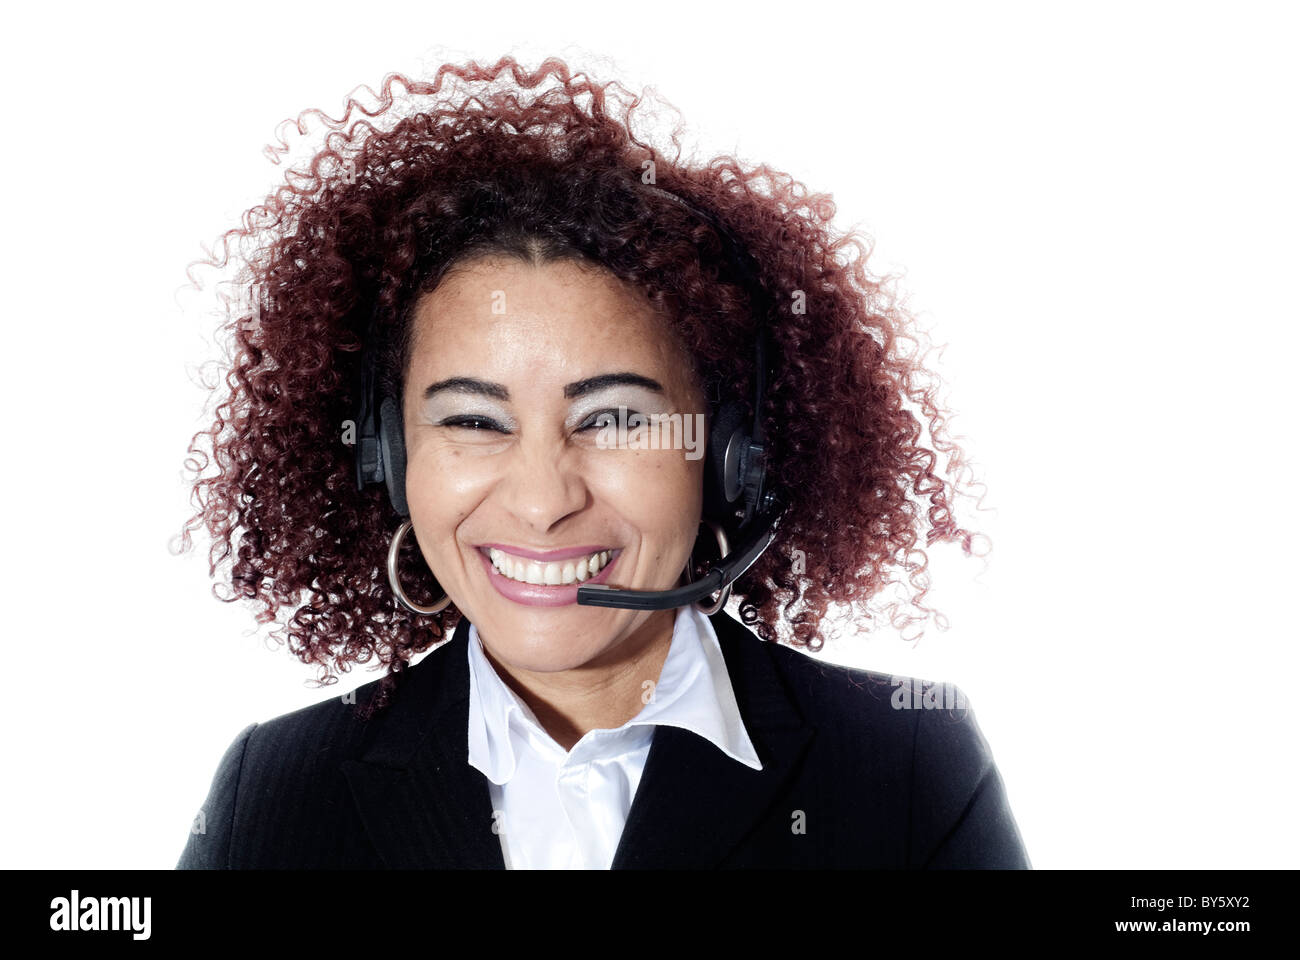 Photographie de horizontale Woman smiling brésilien avec des écouteurs Banque D'Images